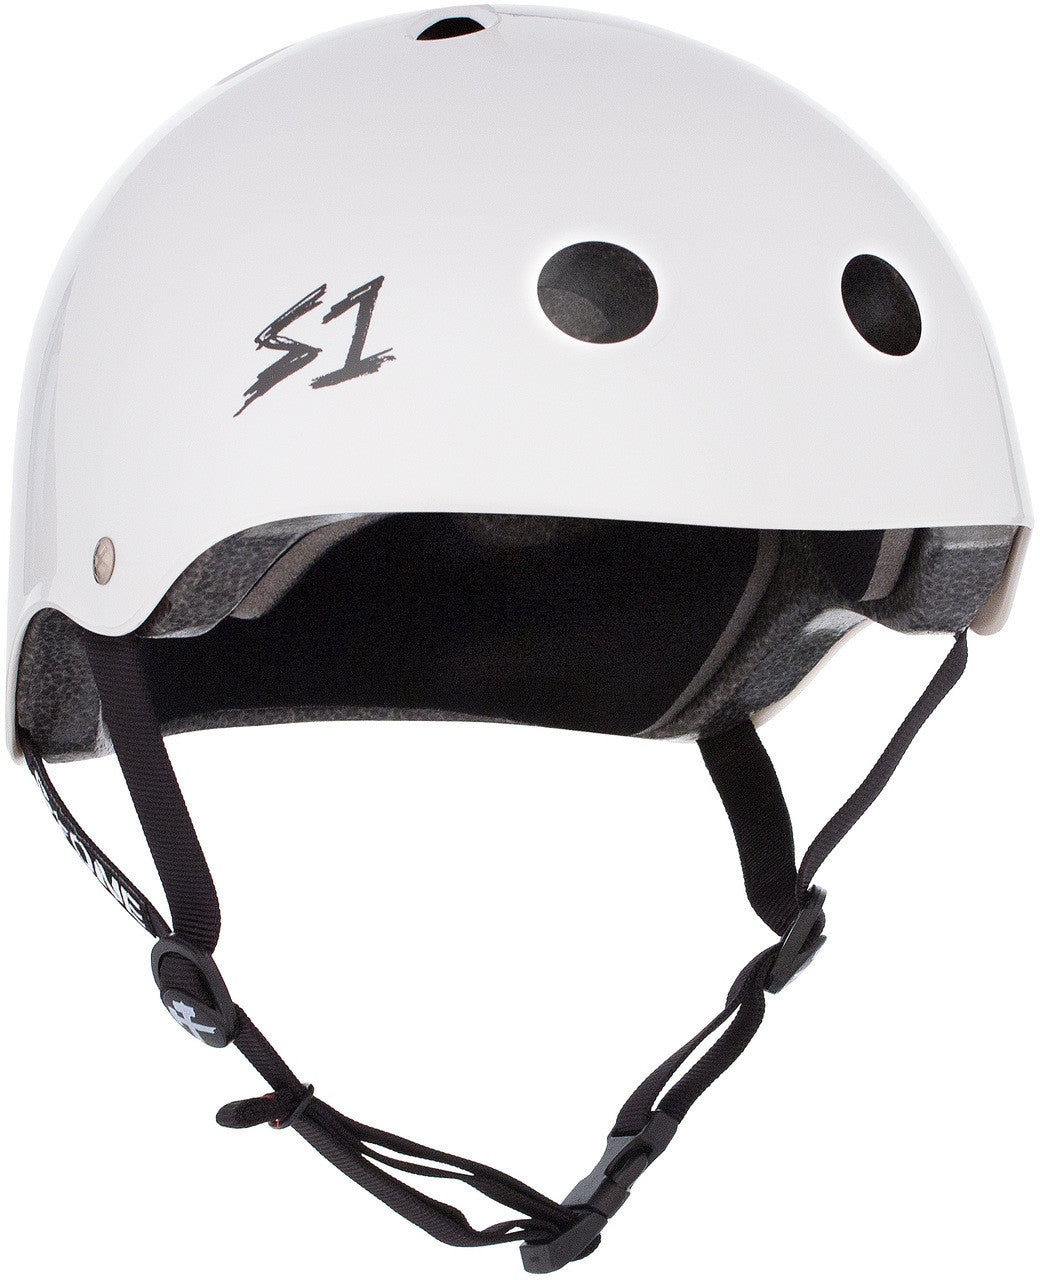 S One Lifer Helmet Skate - White Gloss